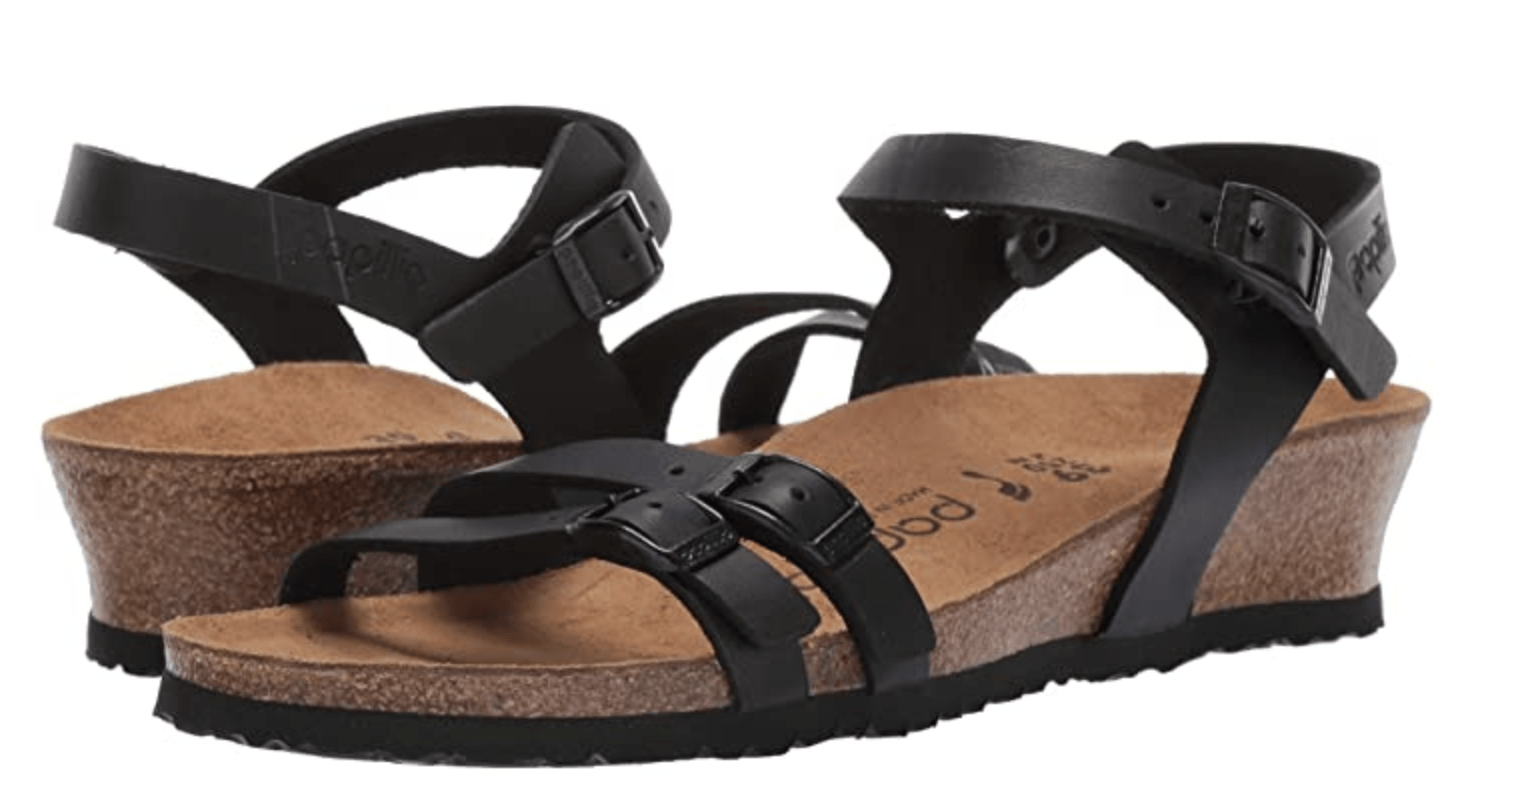 birkenstock sale womens sandals